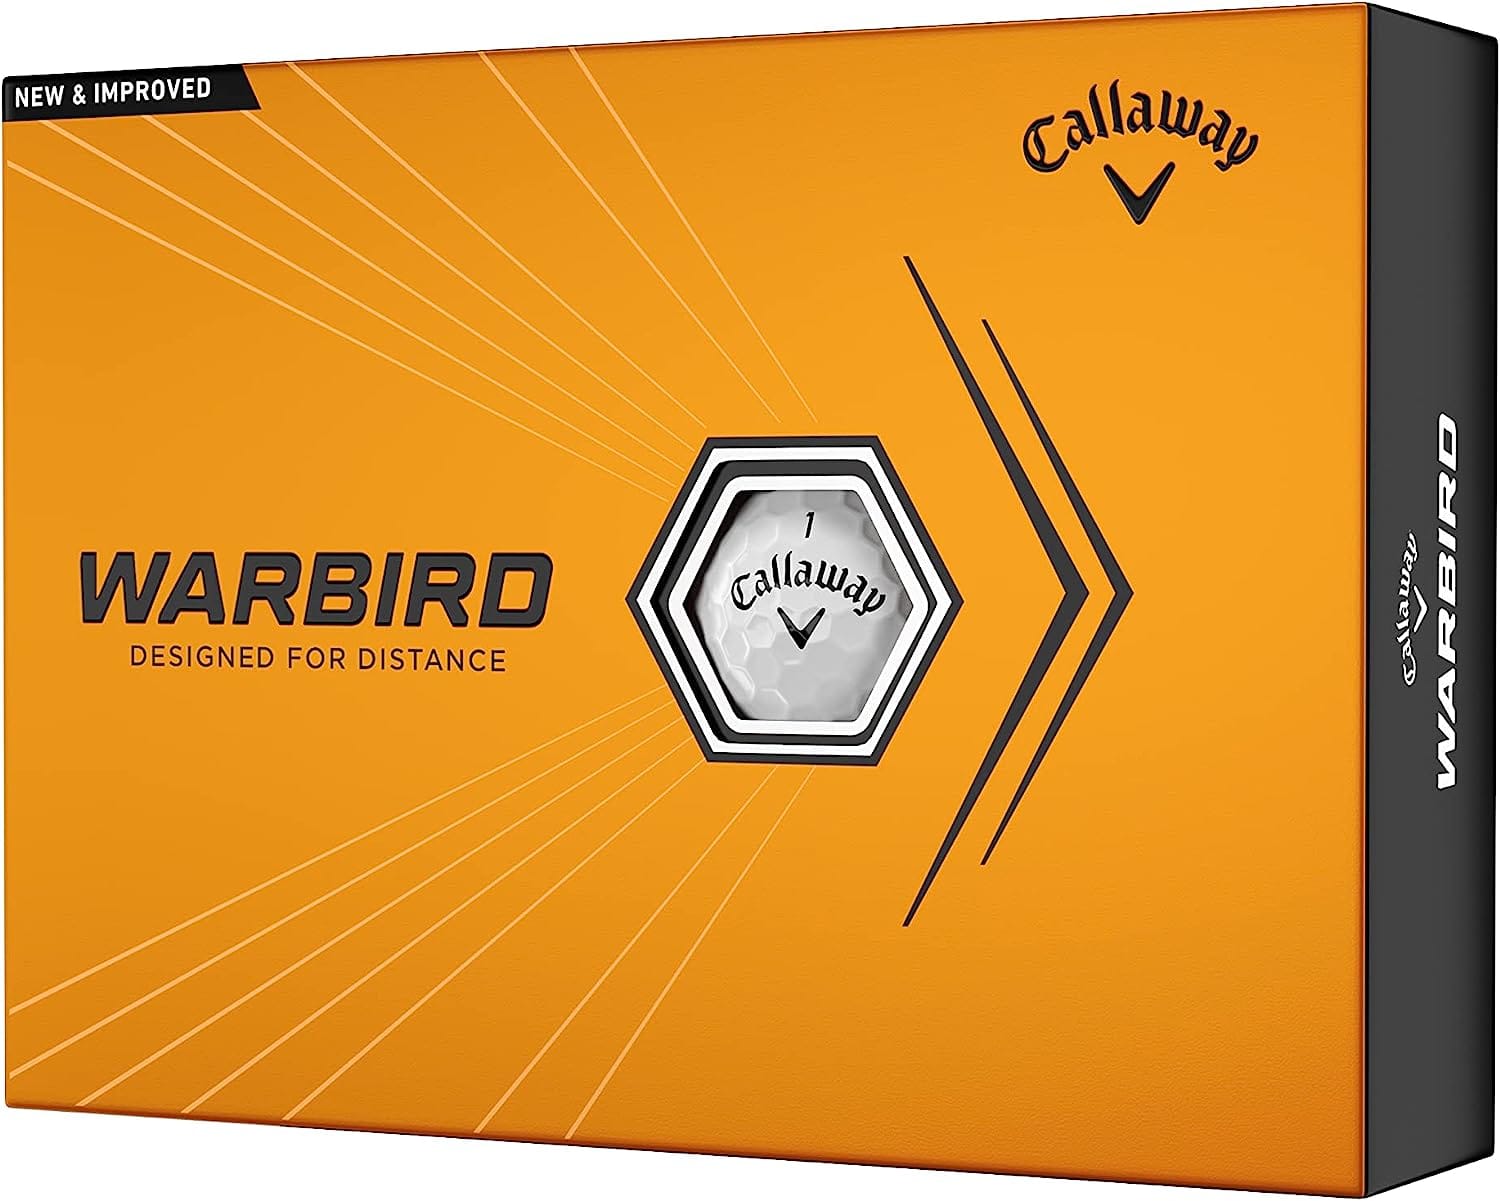 Calloway Warbird-Best golf balls for beginners